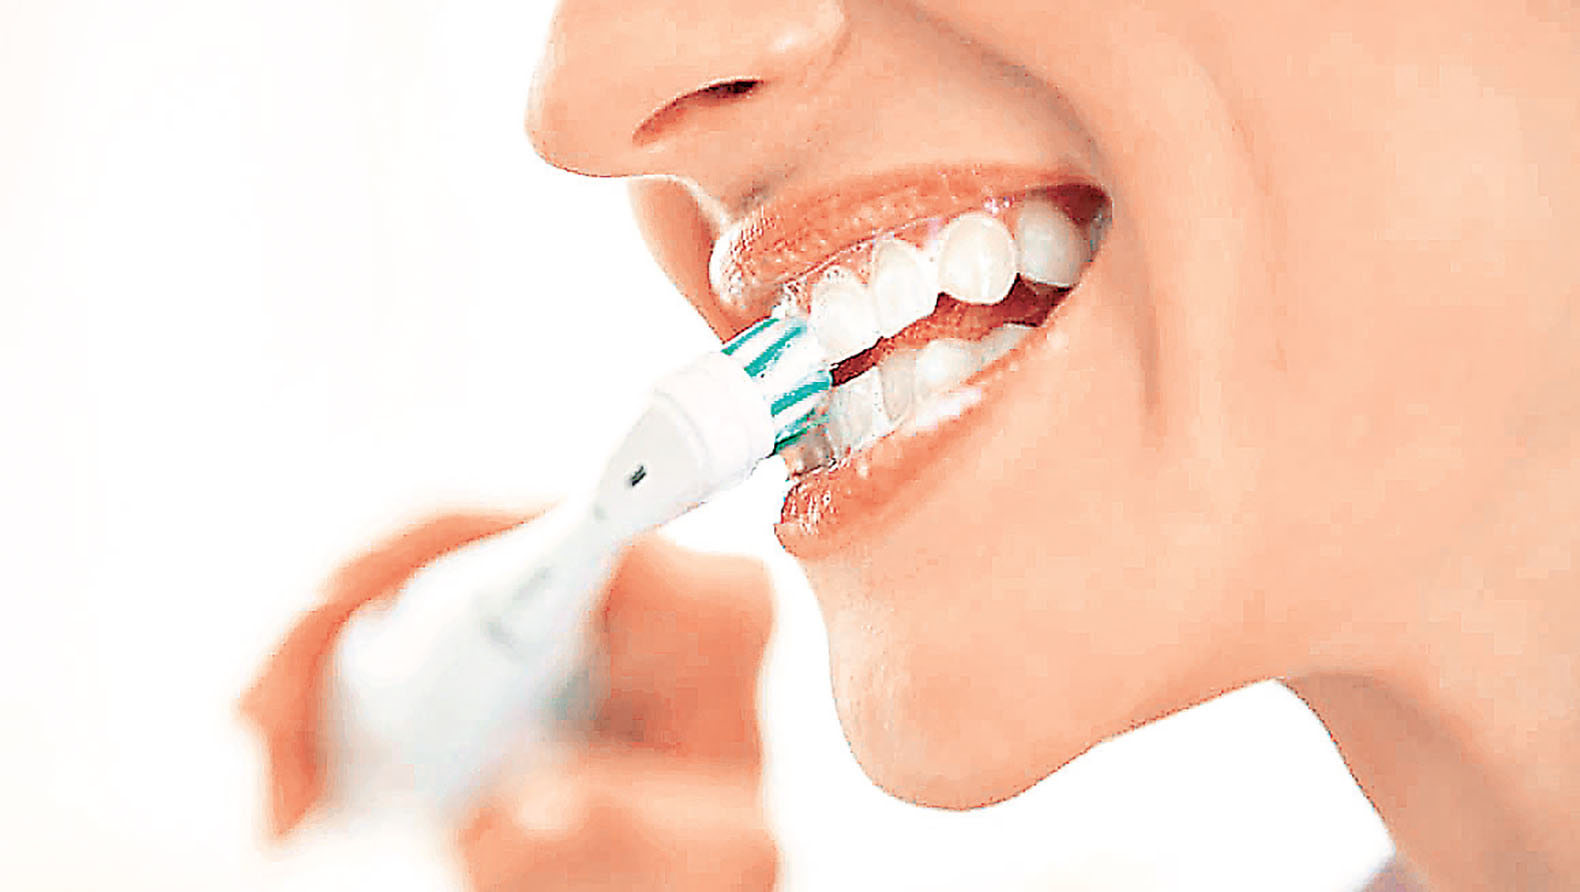 ■箍牙後更須注意牙齒及口腔清潔。